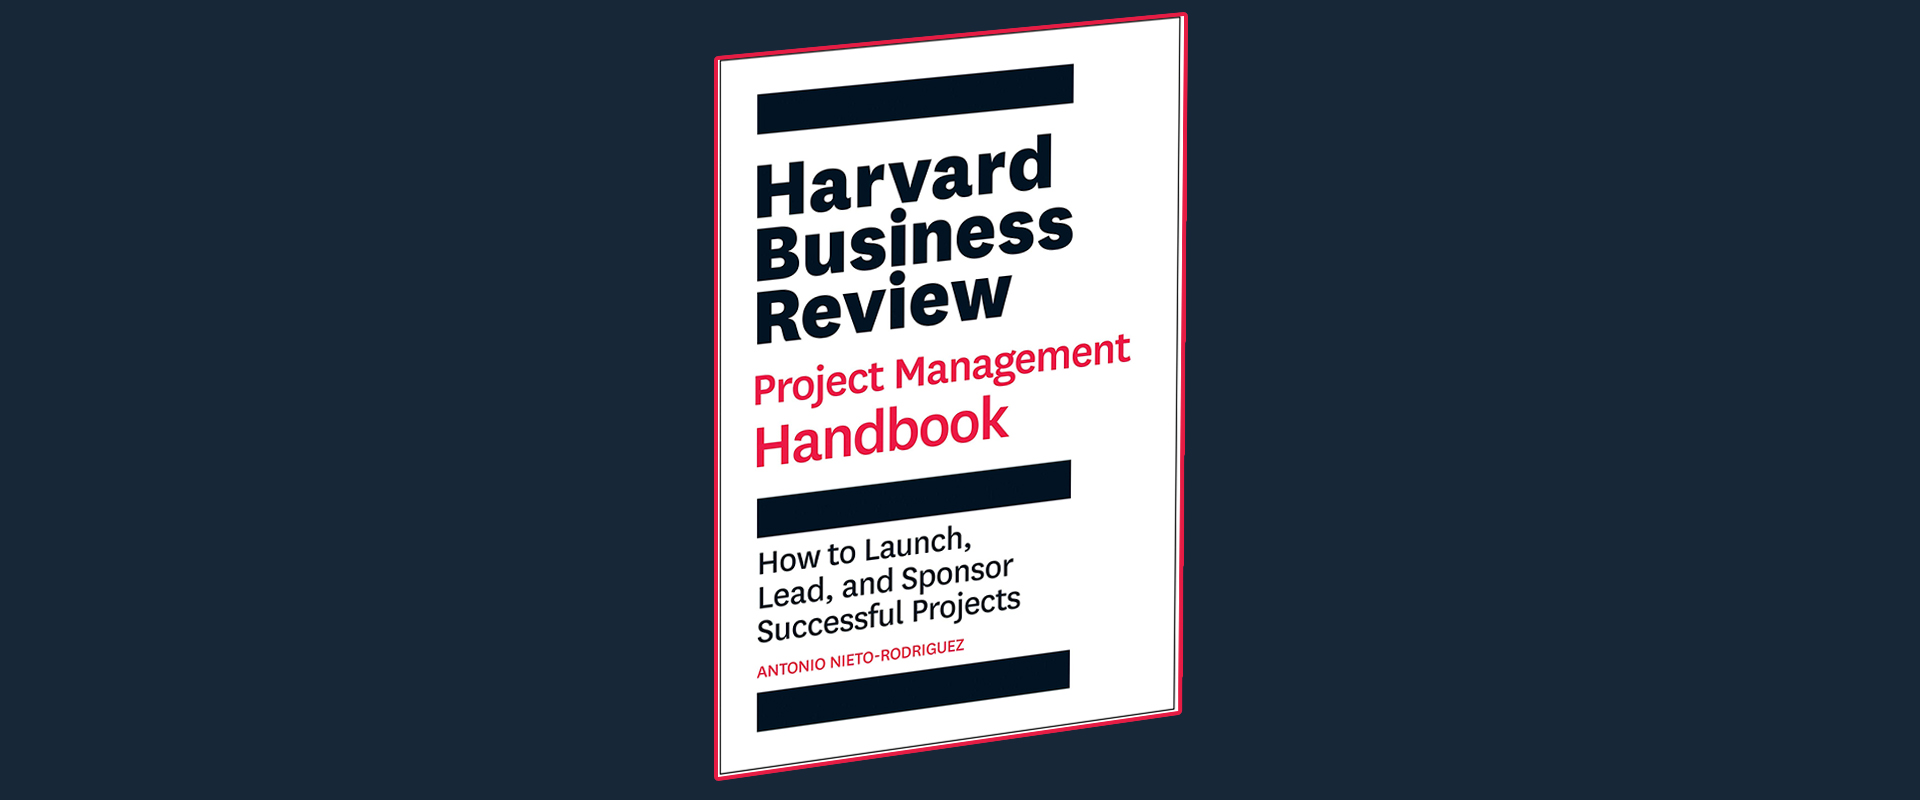 کتاب هندبوک مدیریت پروژه هاروارد | مصوران دانش